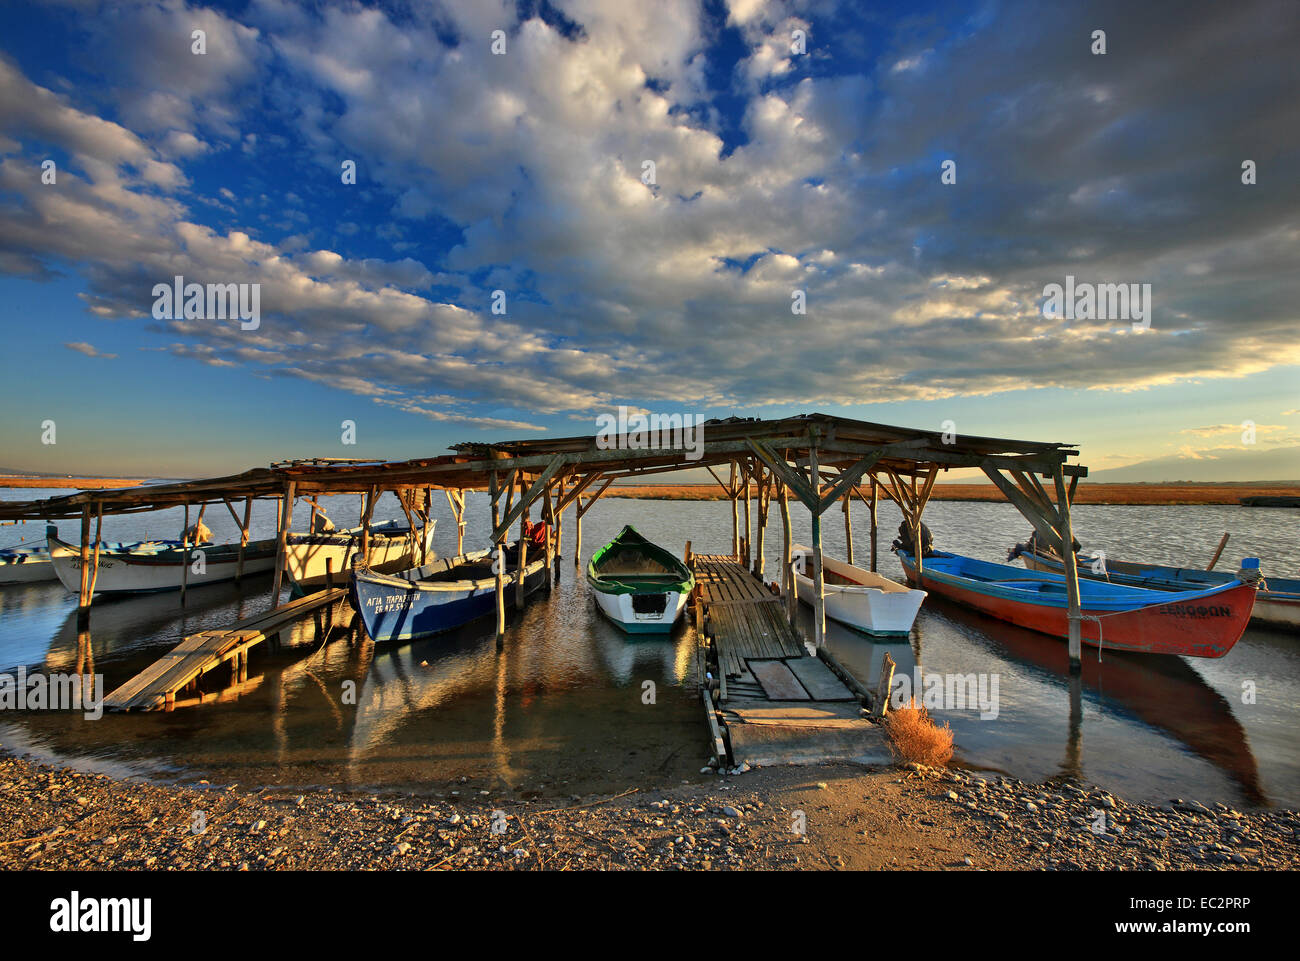 Barche da pesca nel delta del fiume Aliakmon, Pieria - Imathia, Macedonia, Grecia. Foto Stock